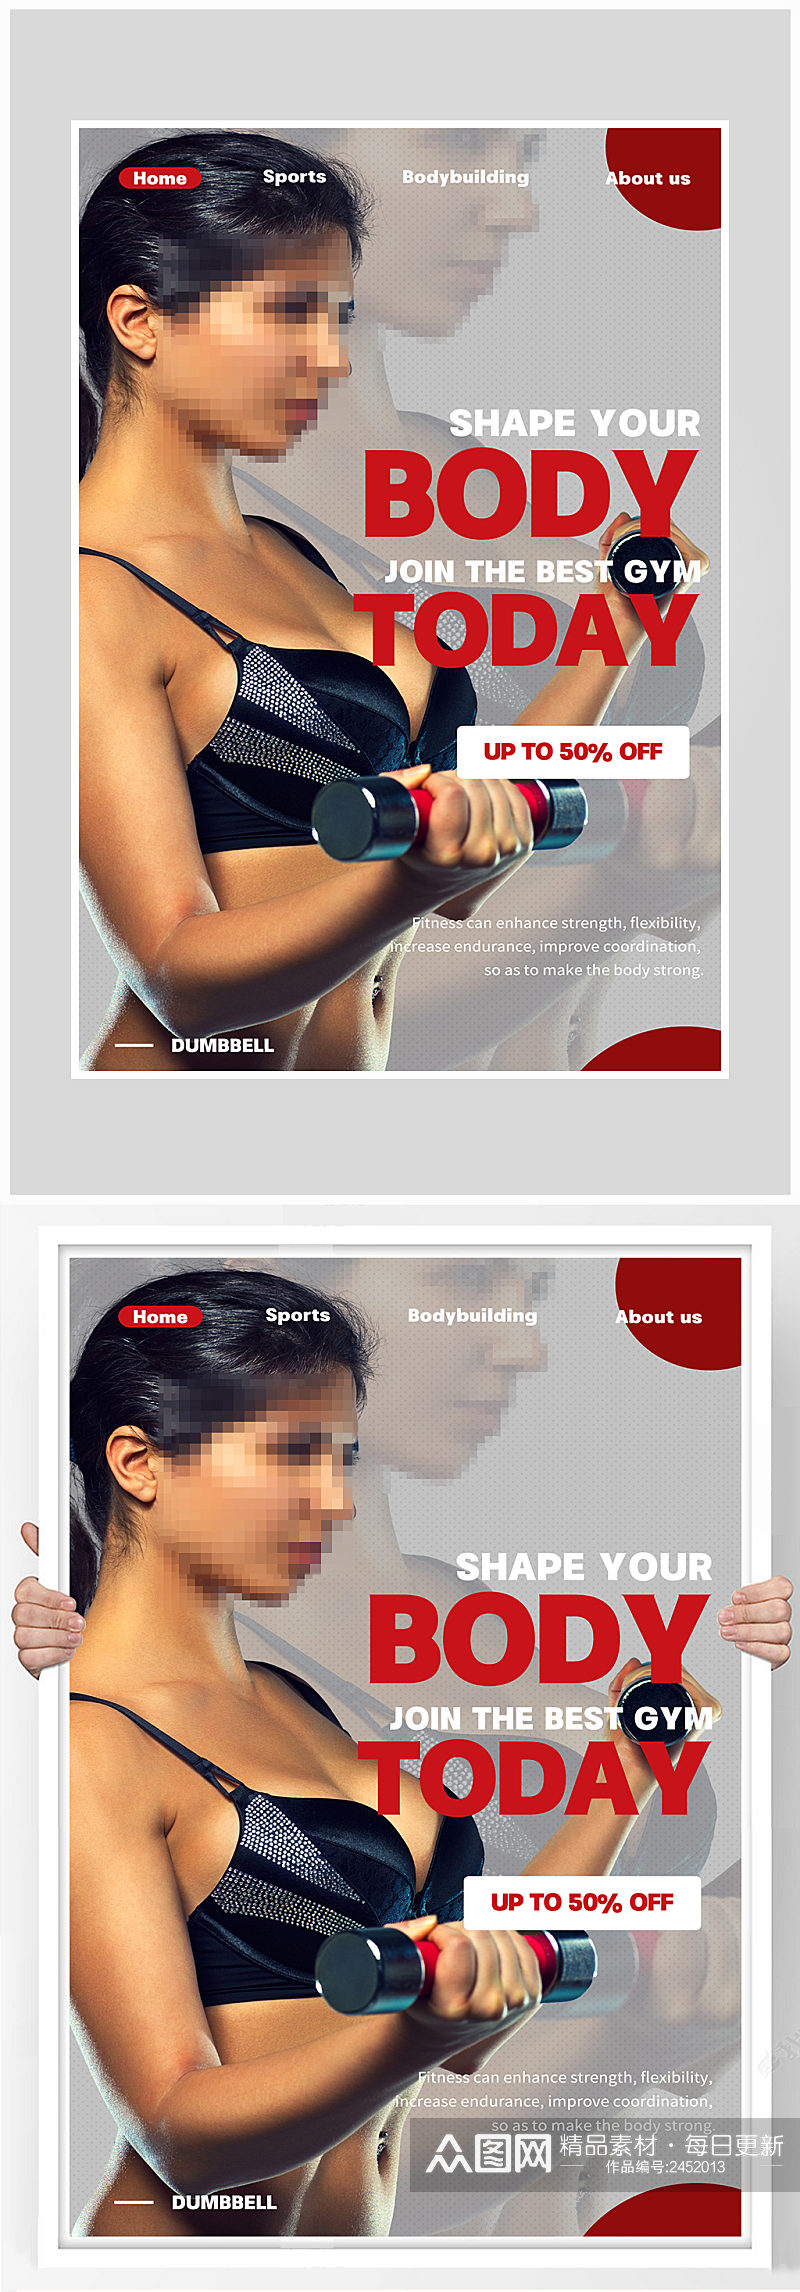 创意质感时尚健身运动宣传海报设计素材